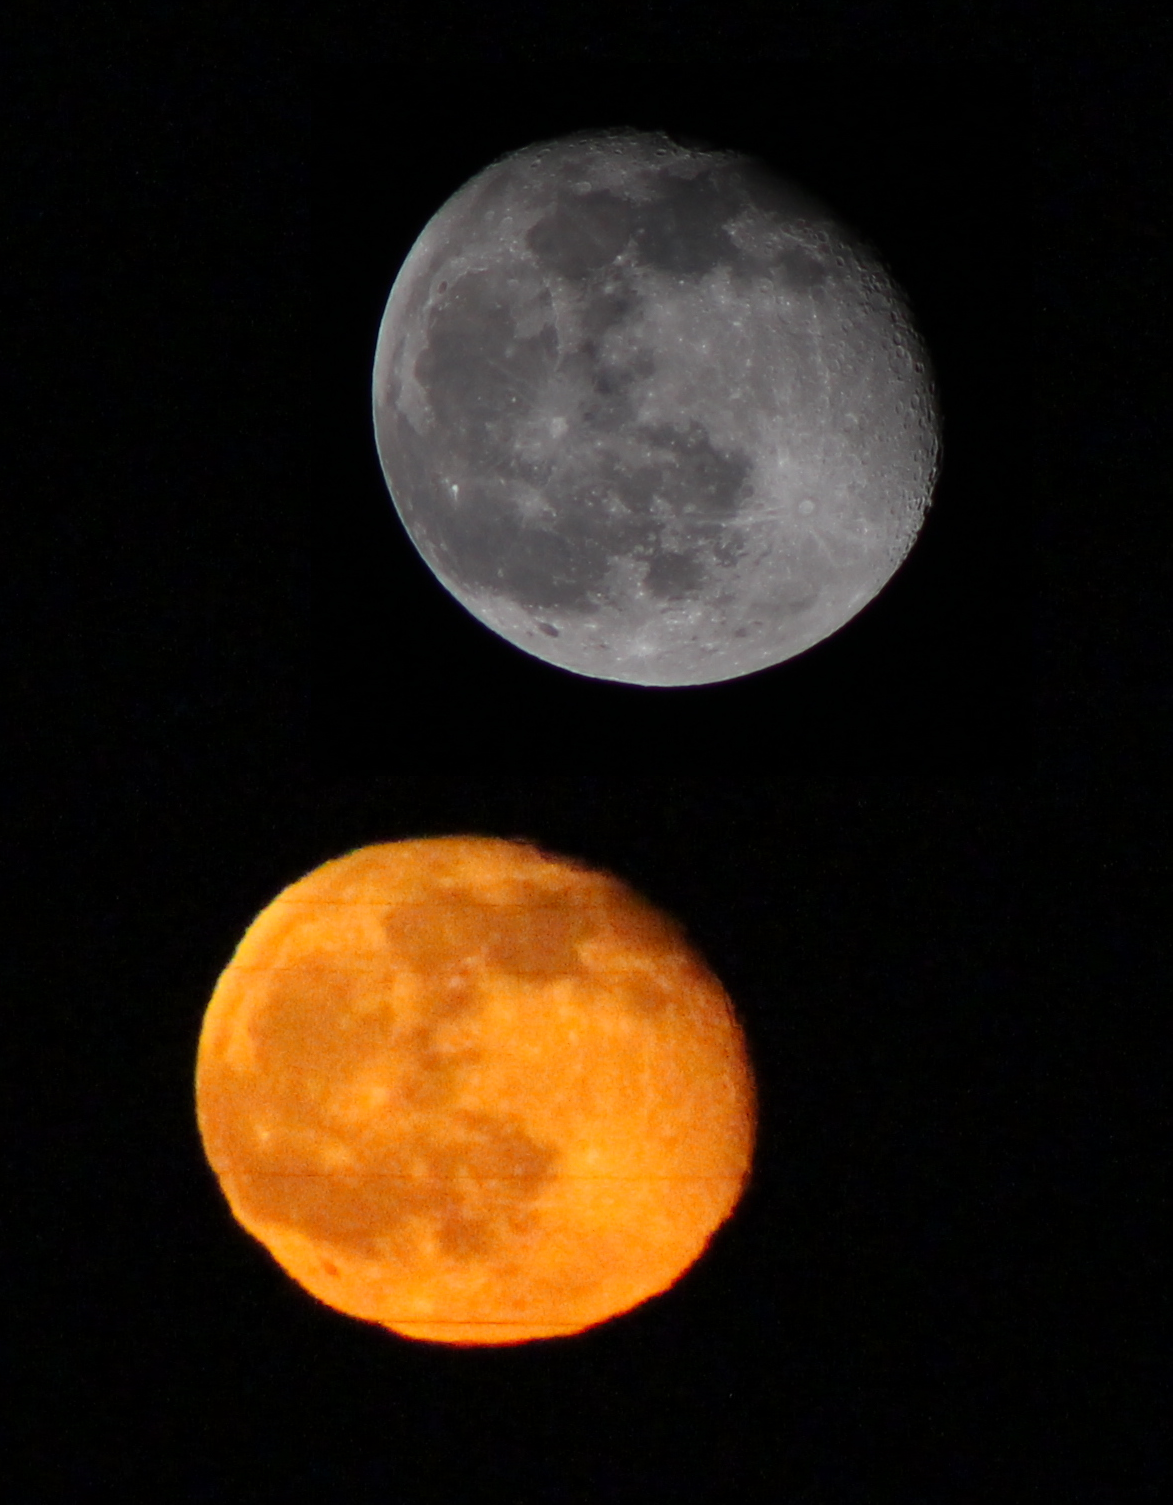 Größenvergleich zwischen horizontnahem und hochstehendem Mond